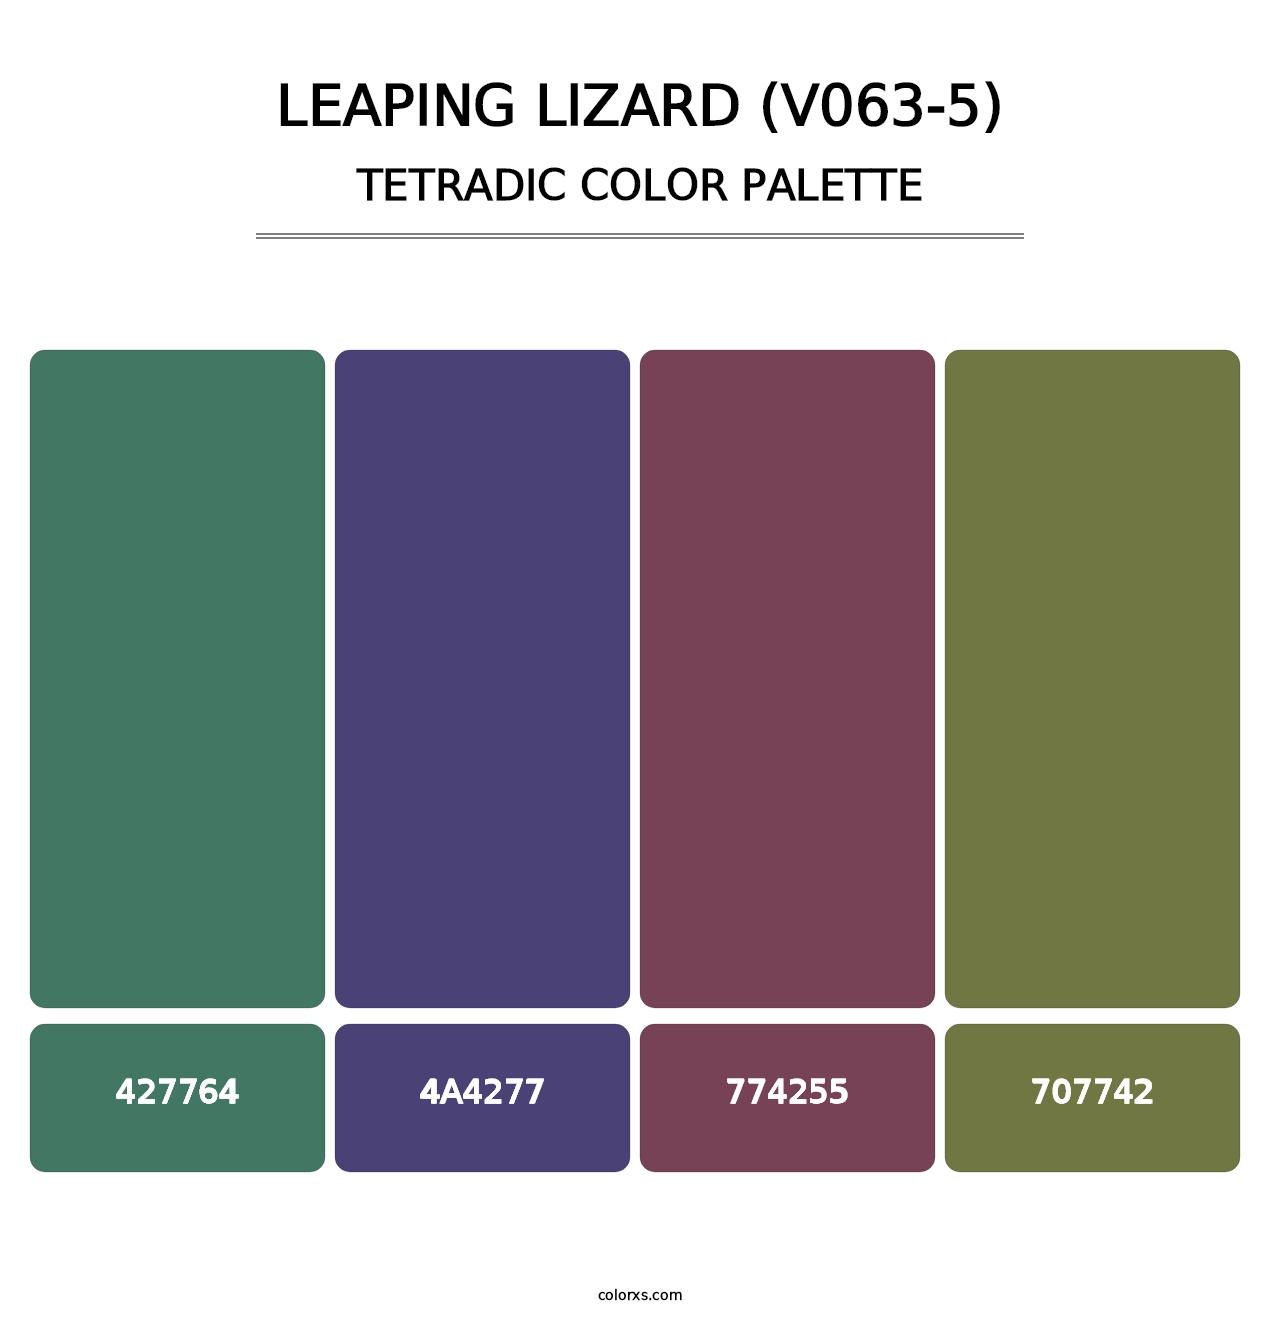 Leaping Lizard (V063-5) - Tetradic Color Palette